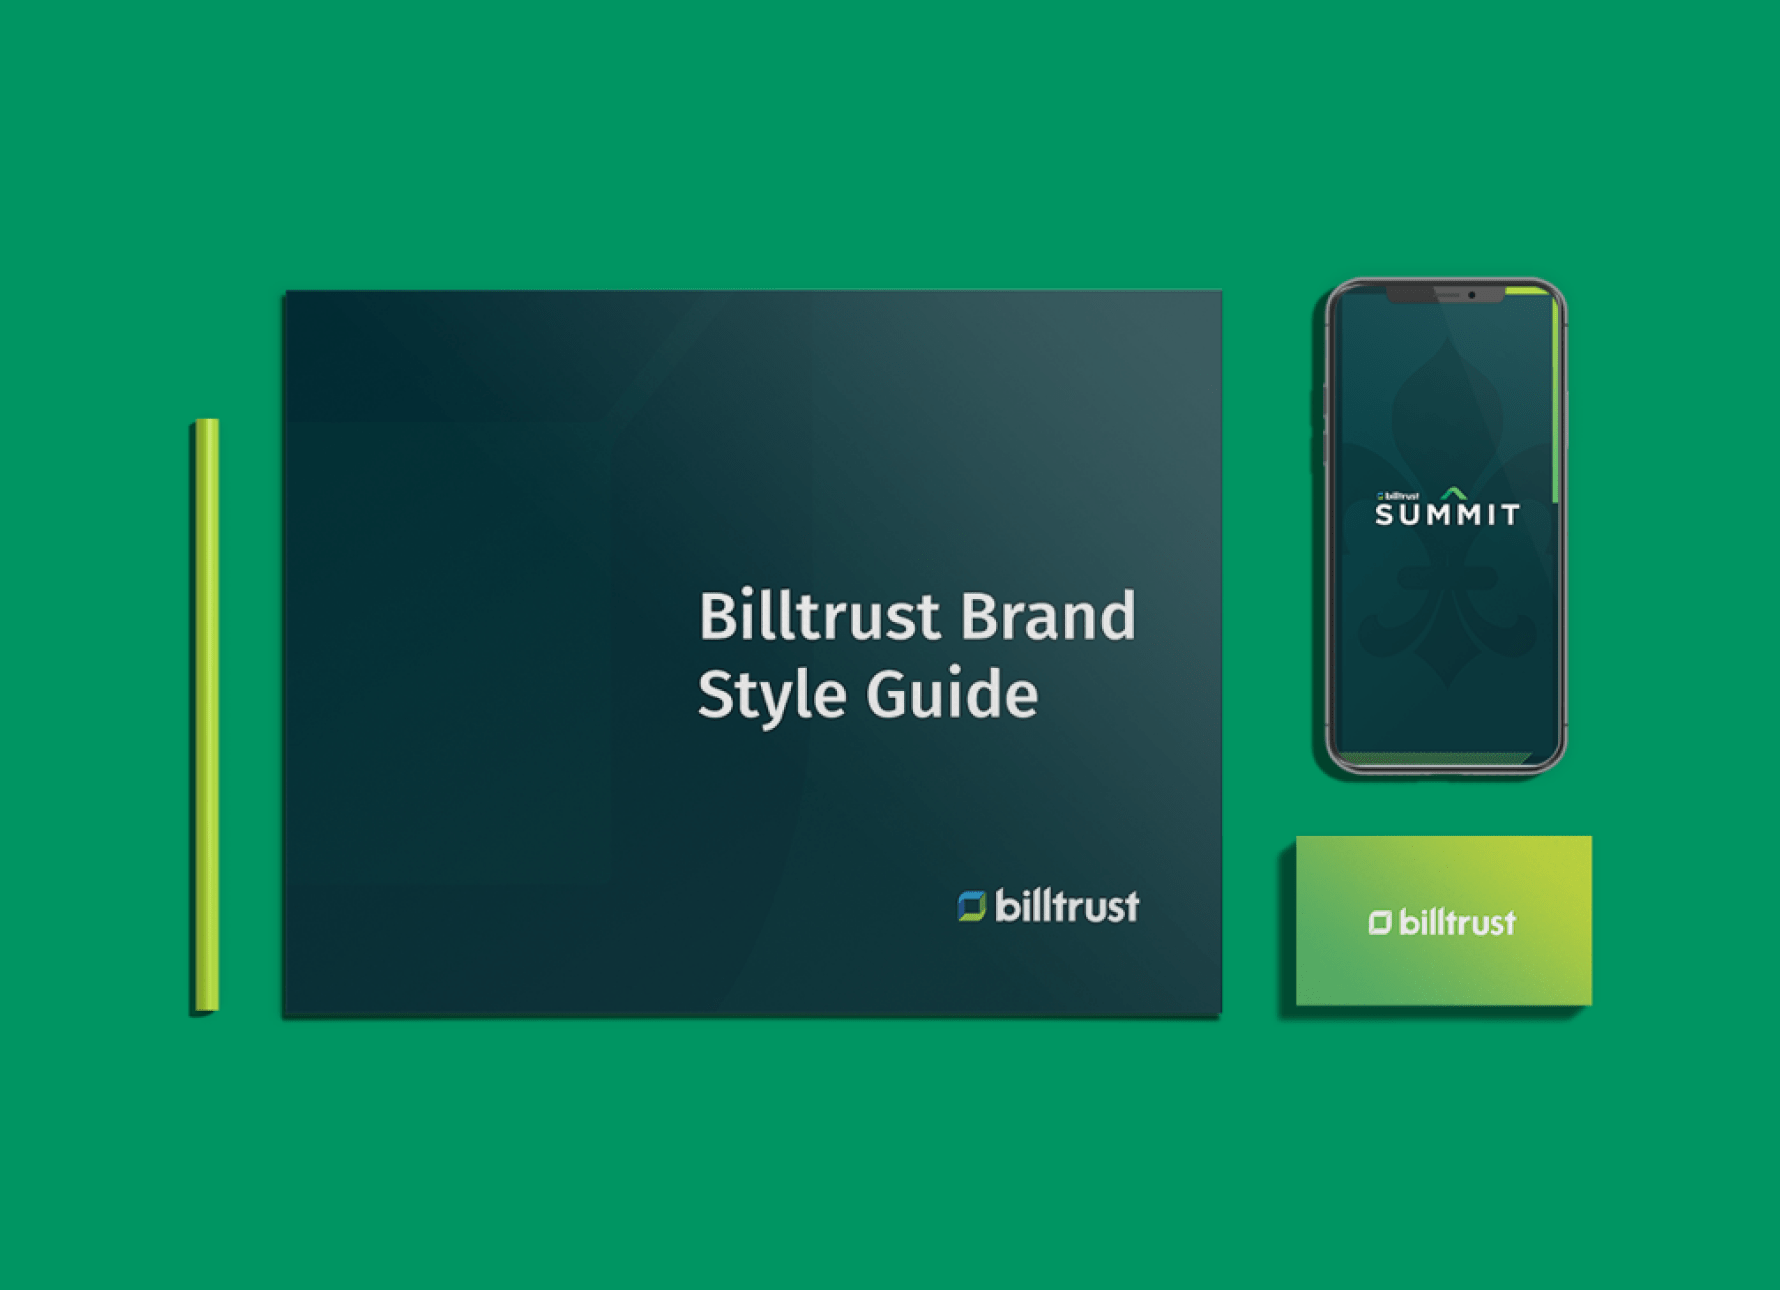 Billtrust Brand Style Guide, smartphone and Billtrust business card